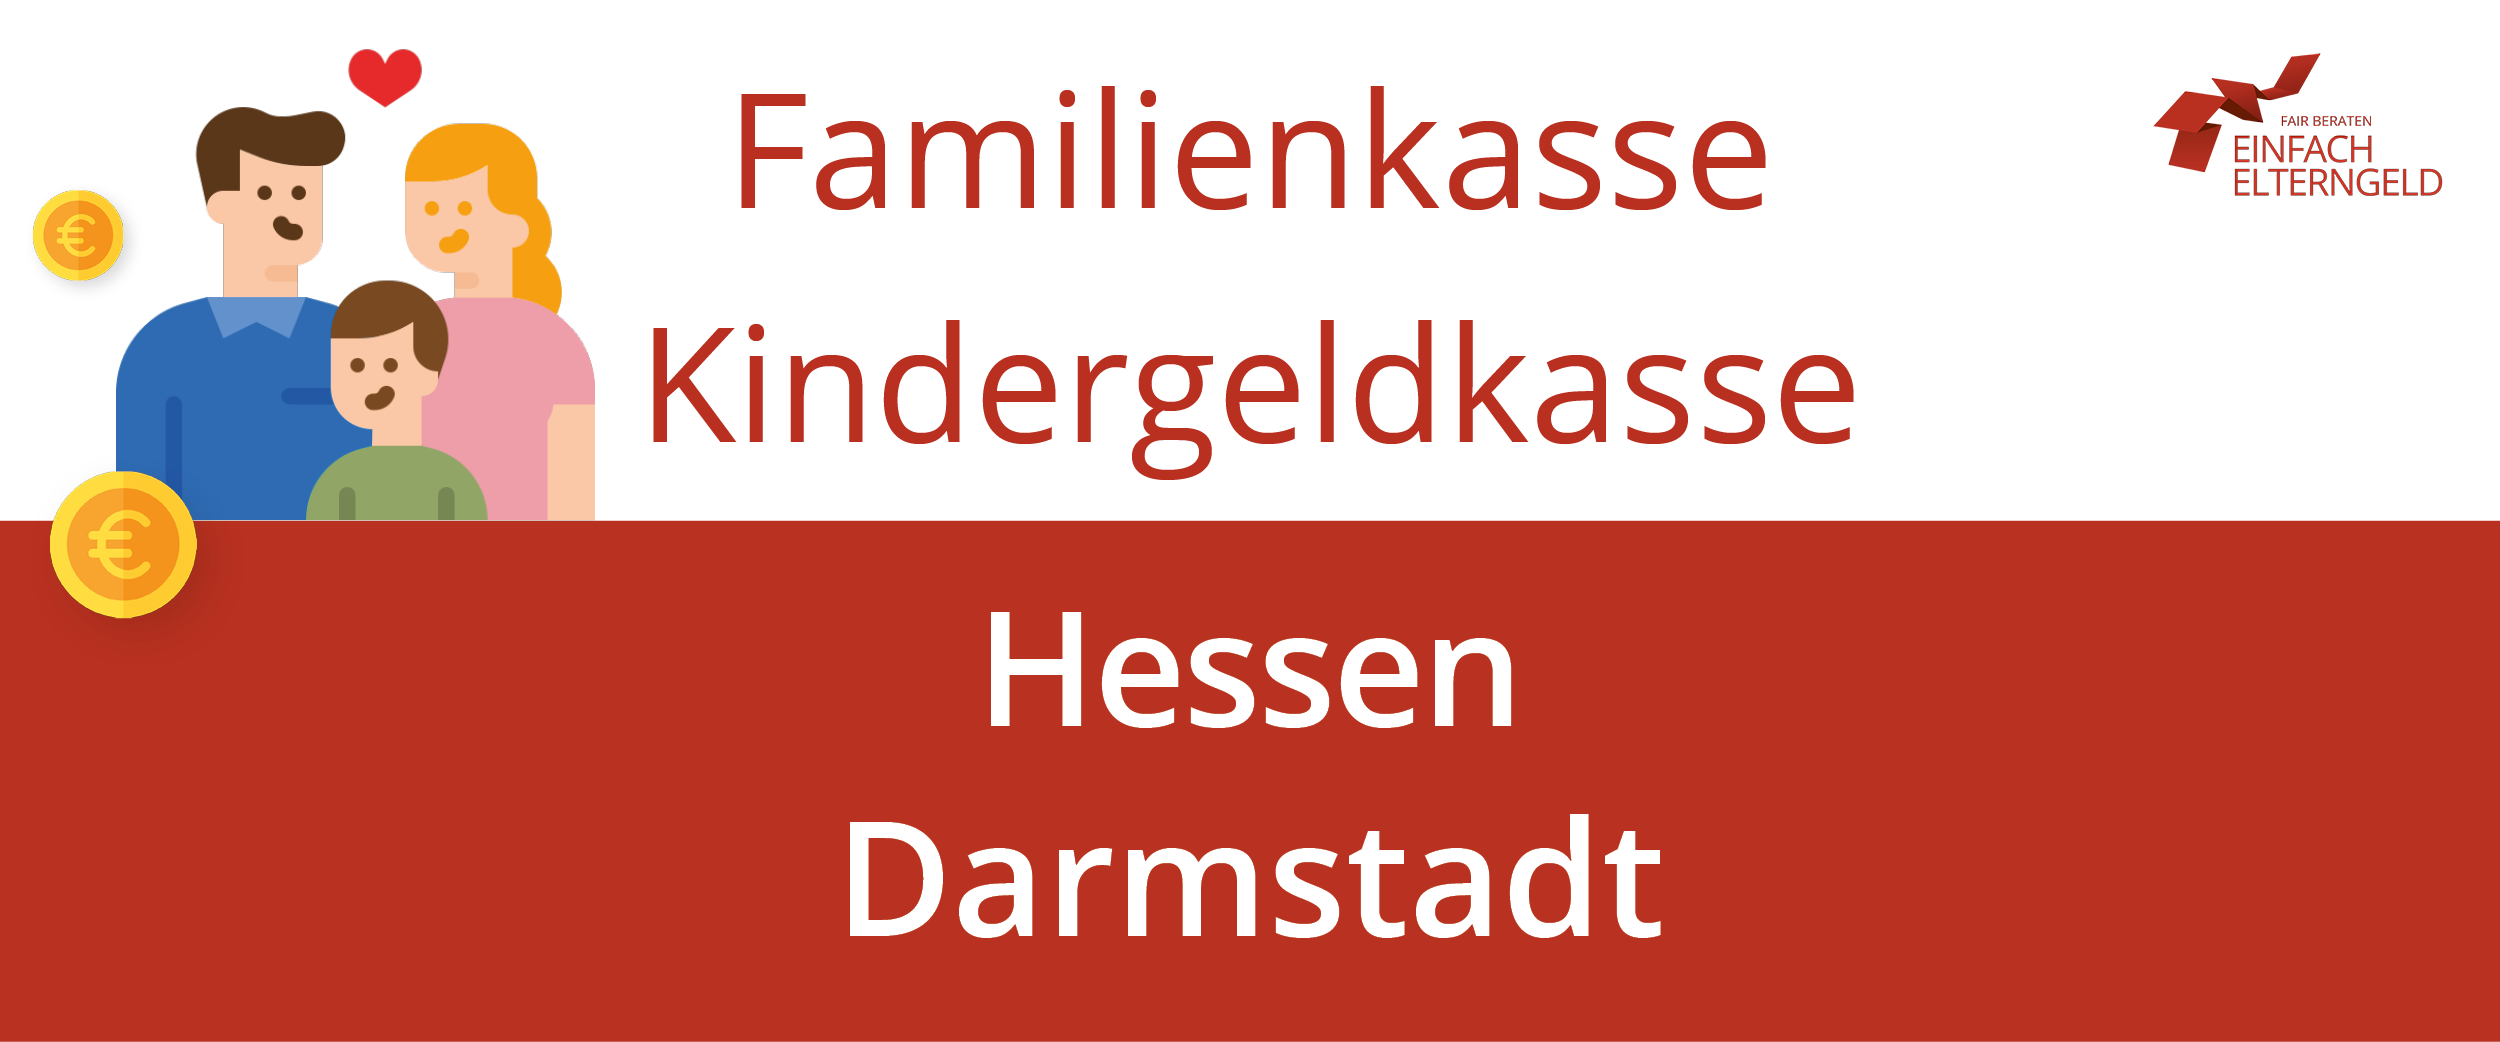 Wir stellen Ihnen die Familienkasse Kindergeldkasse Hessen Darmstadt vor.